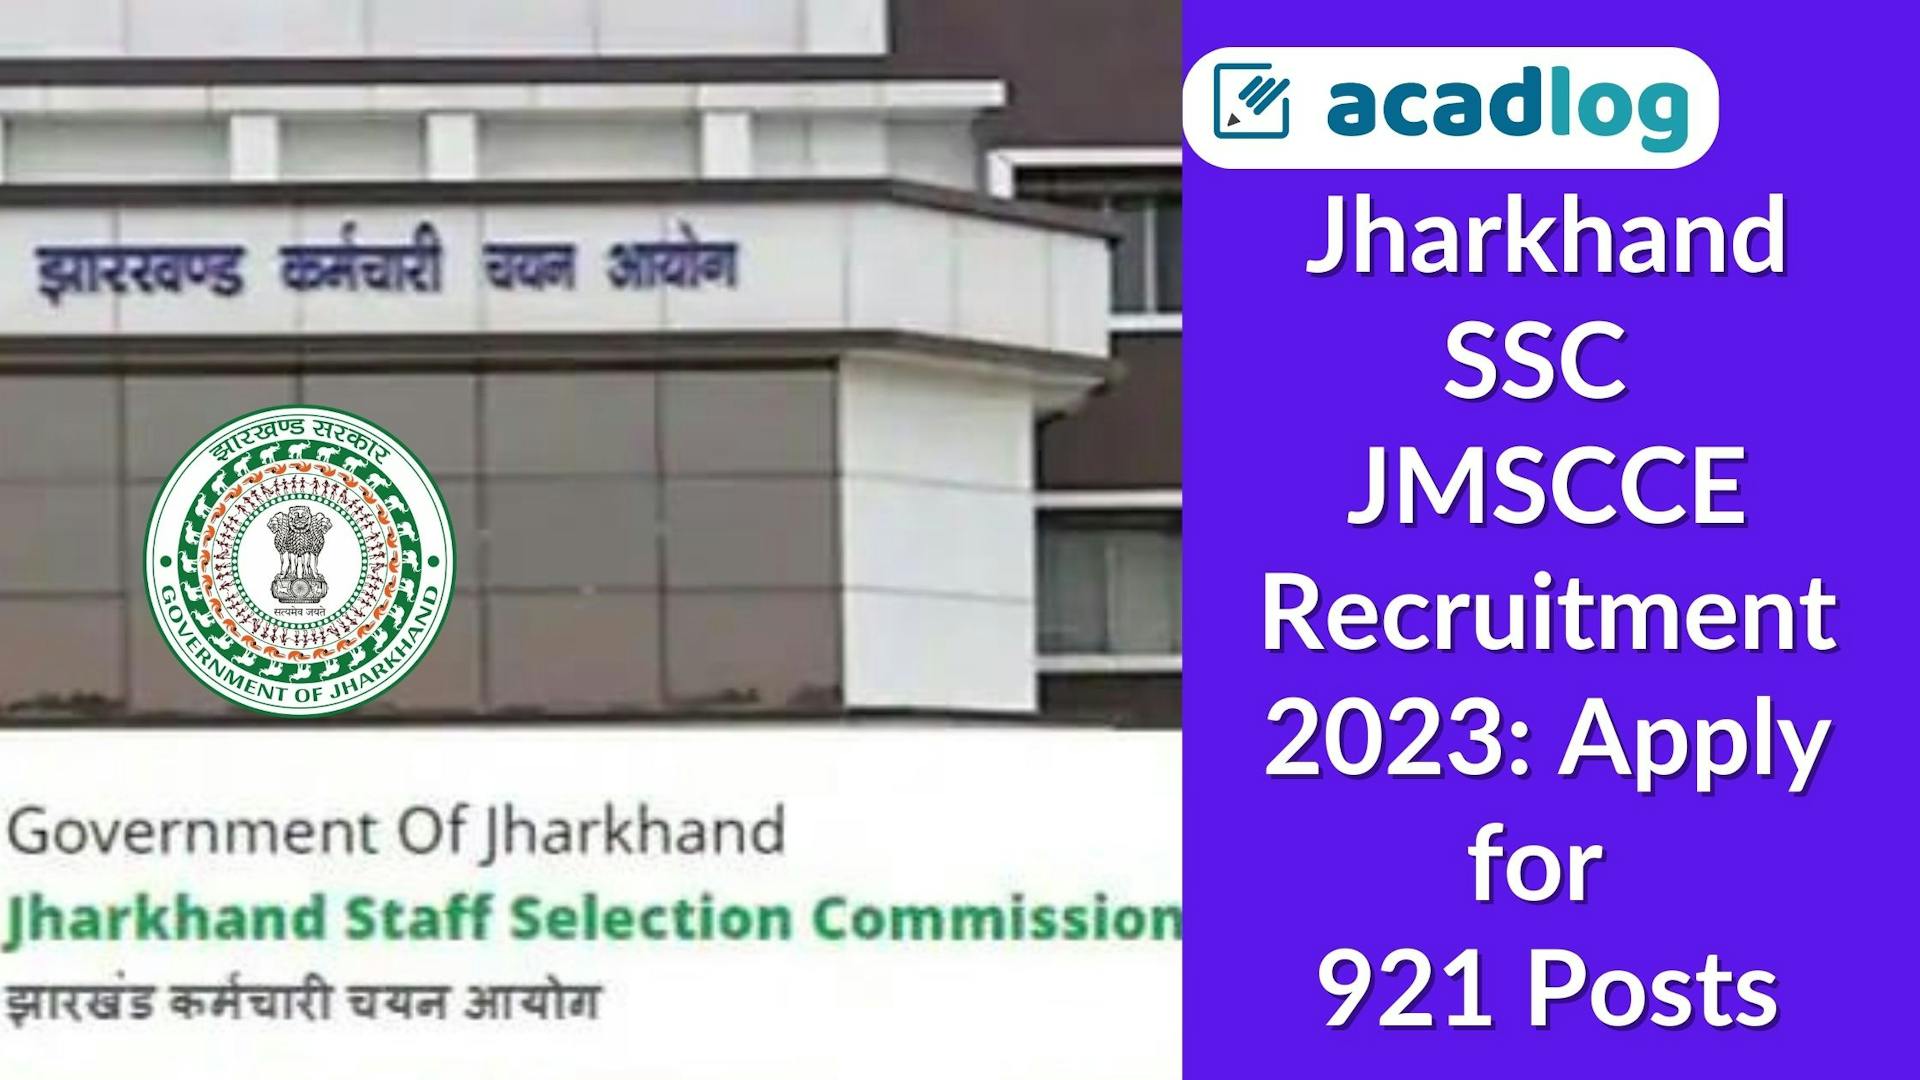 Jharkhand SSC JMSCCE Recruitment 2023: Apply for 921 Posts